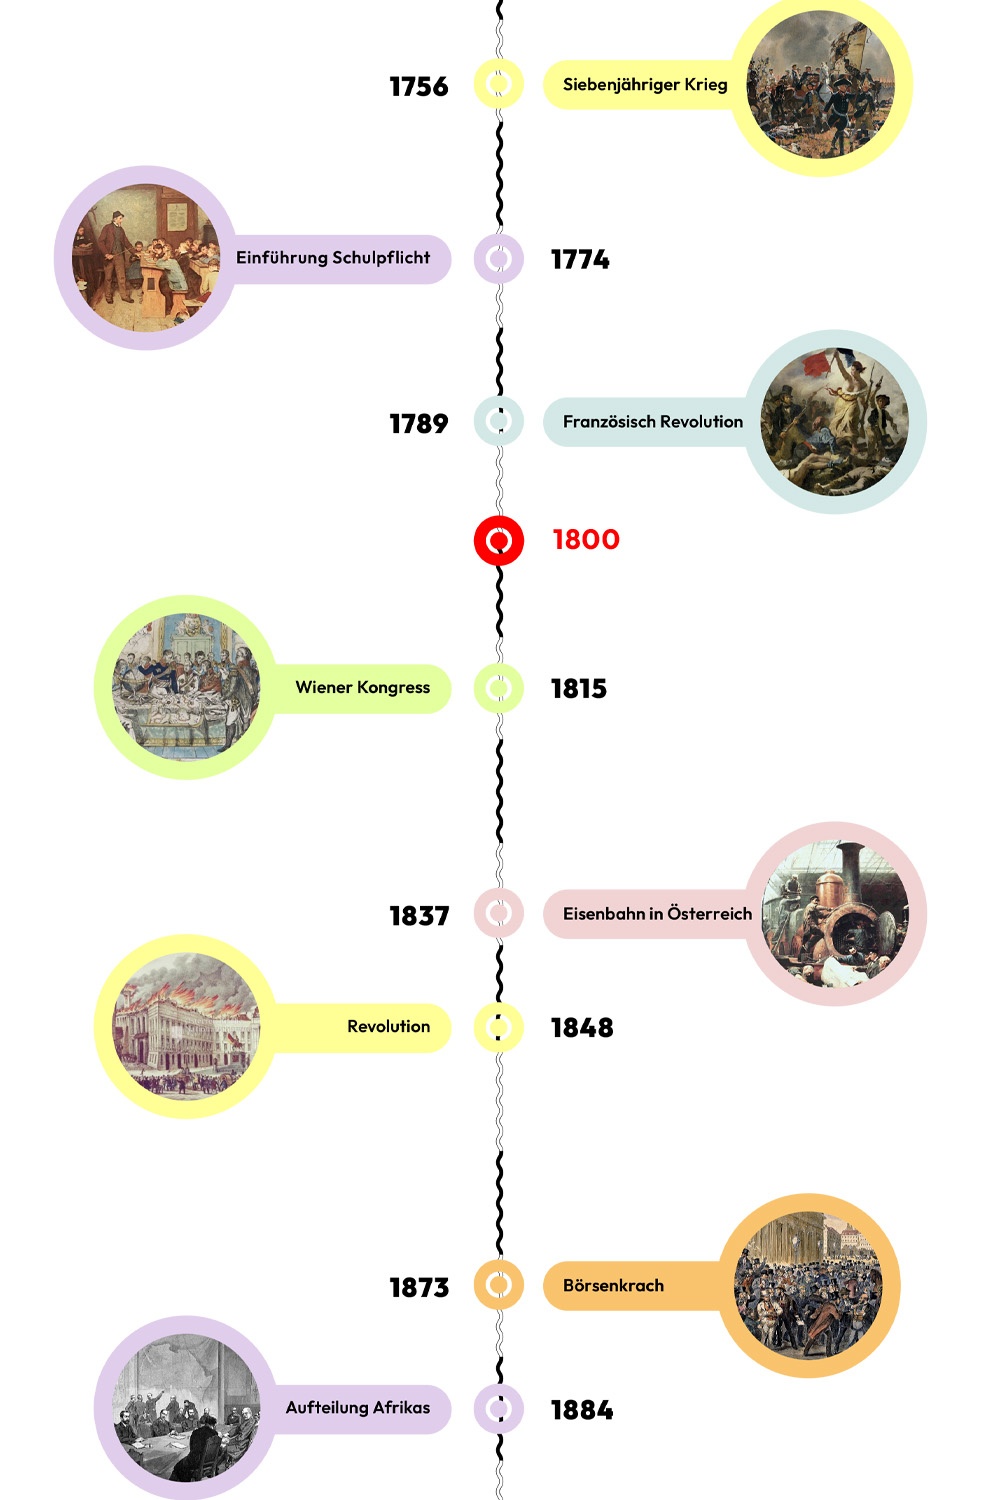 Zeitstrahl mit historischen Ereignissen - 1800 ist hervorgehoben © wasbishergeschah.at